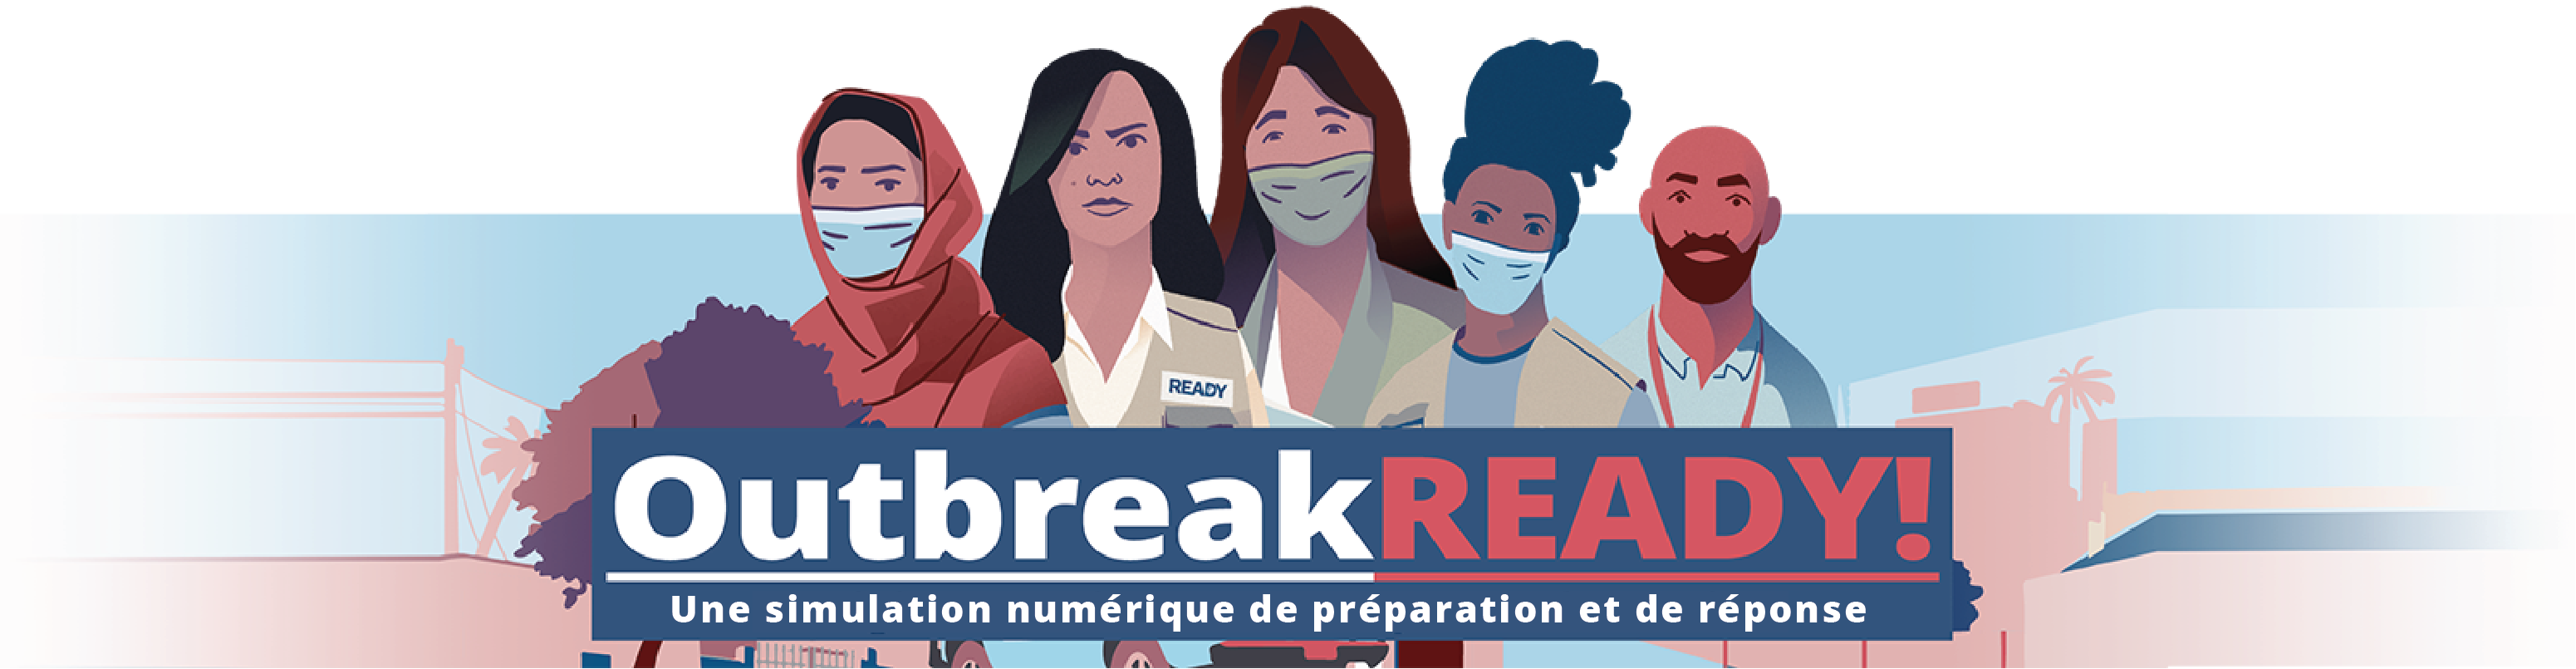 Outbreak READY: Une simulation numérique de préparation et de réponse